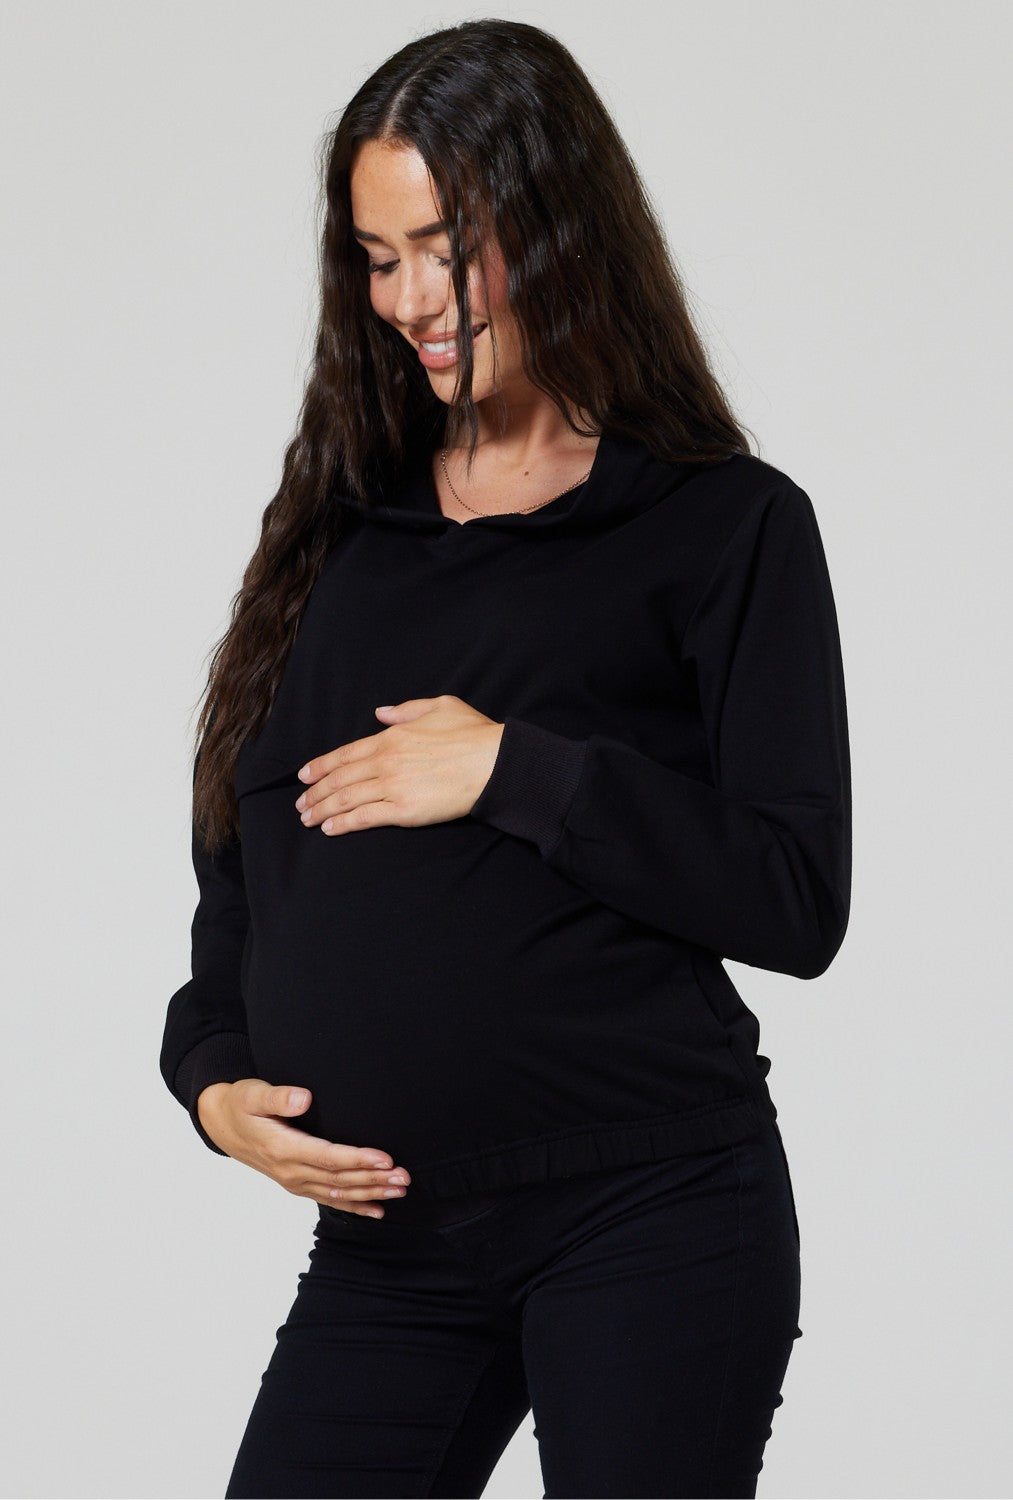 Women's Maternity Bling Hooded Sweatshirt